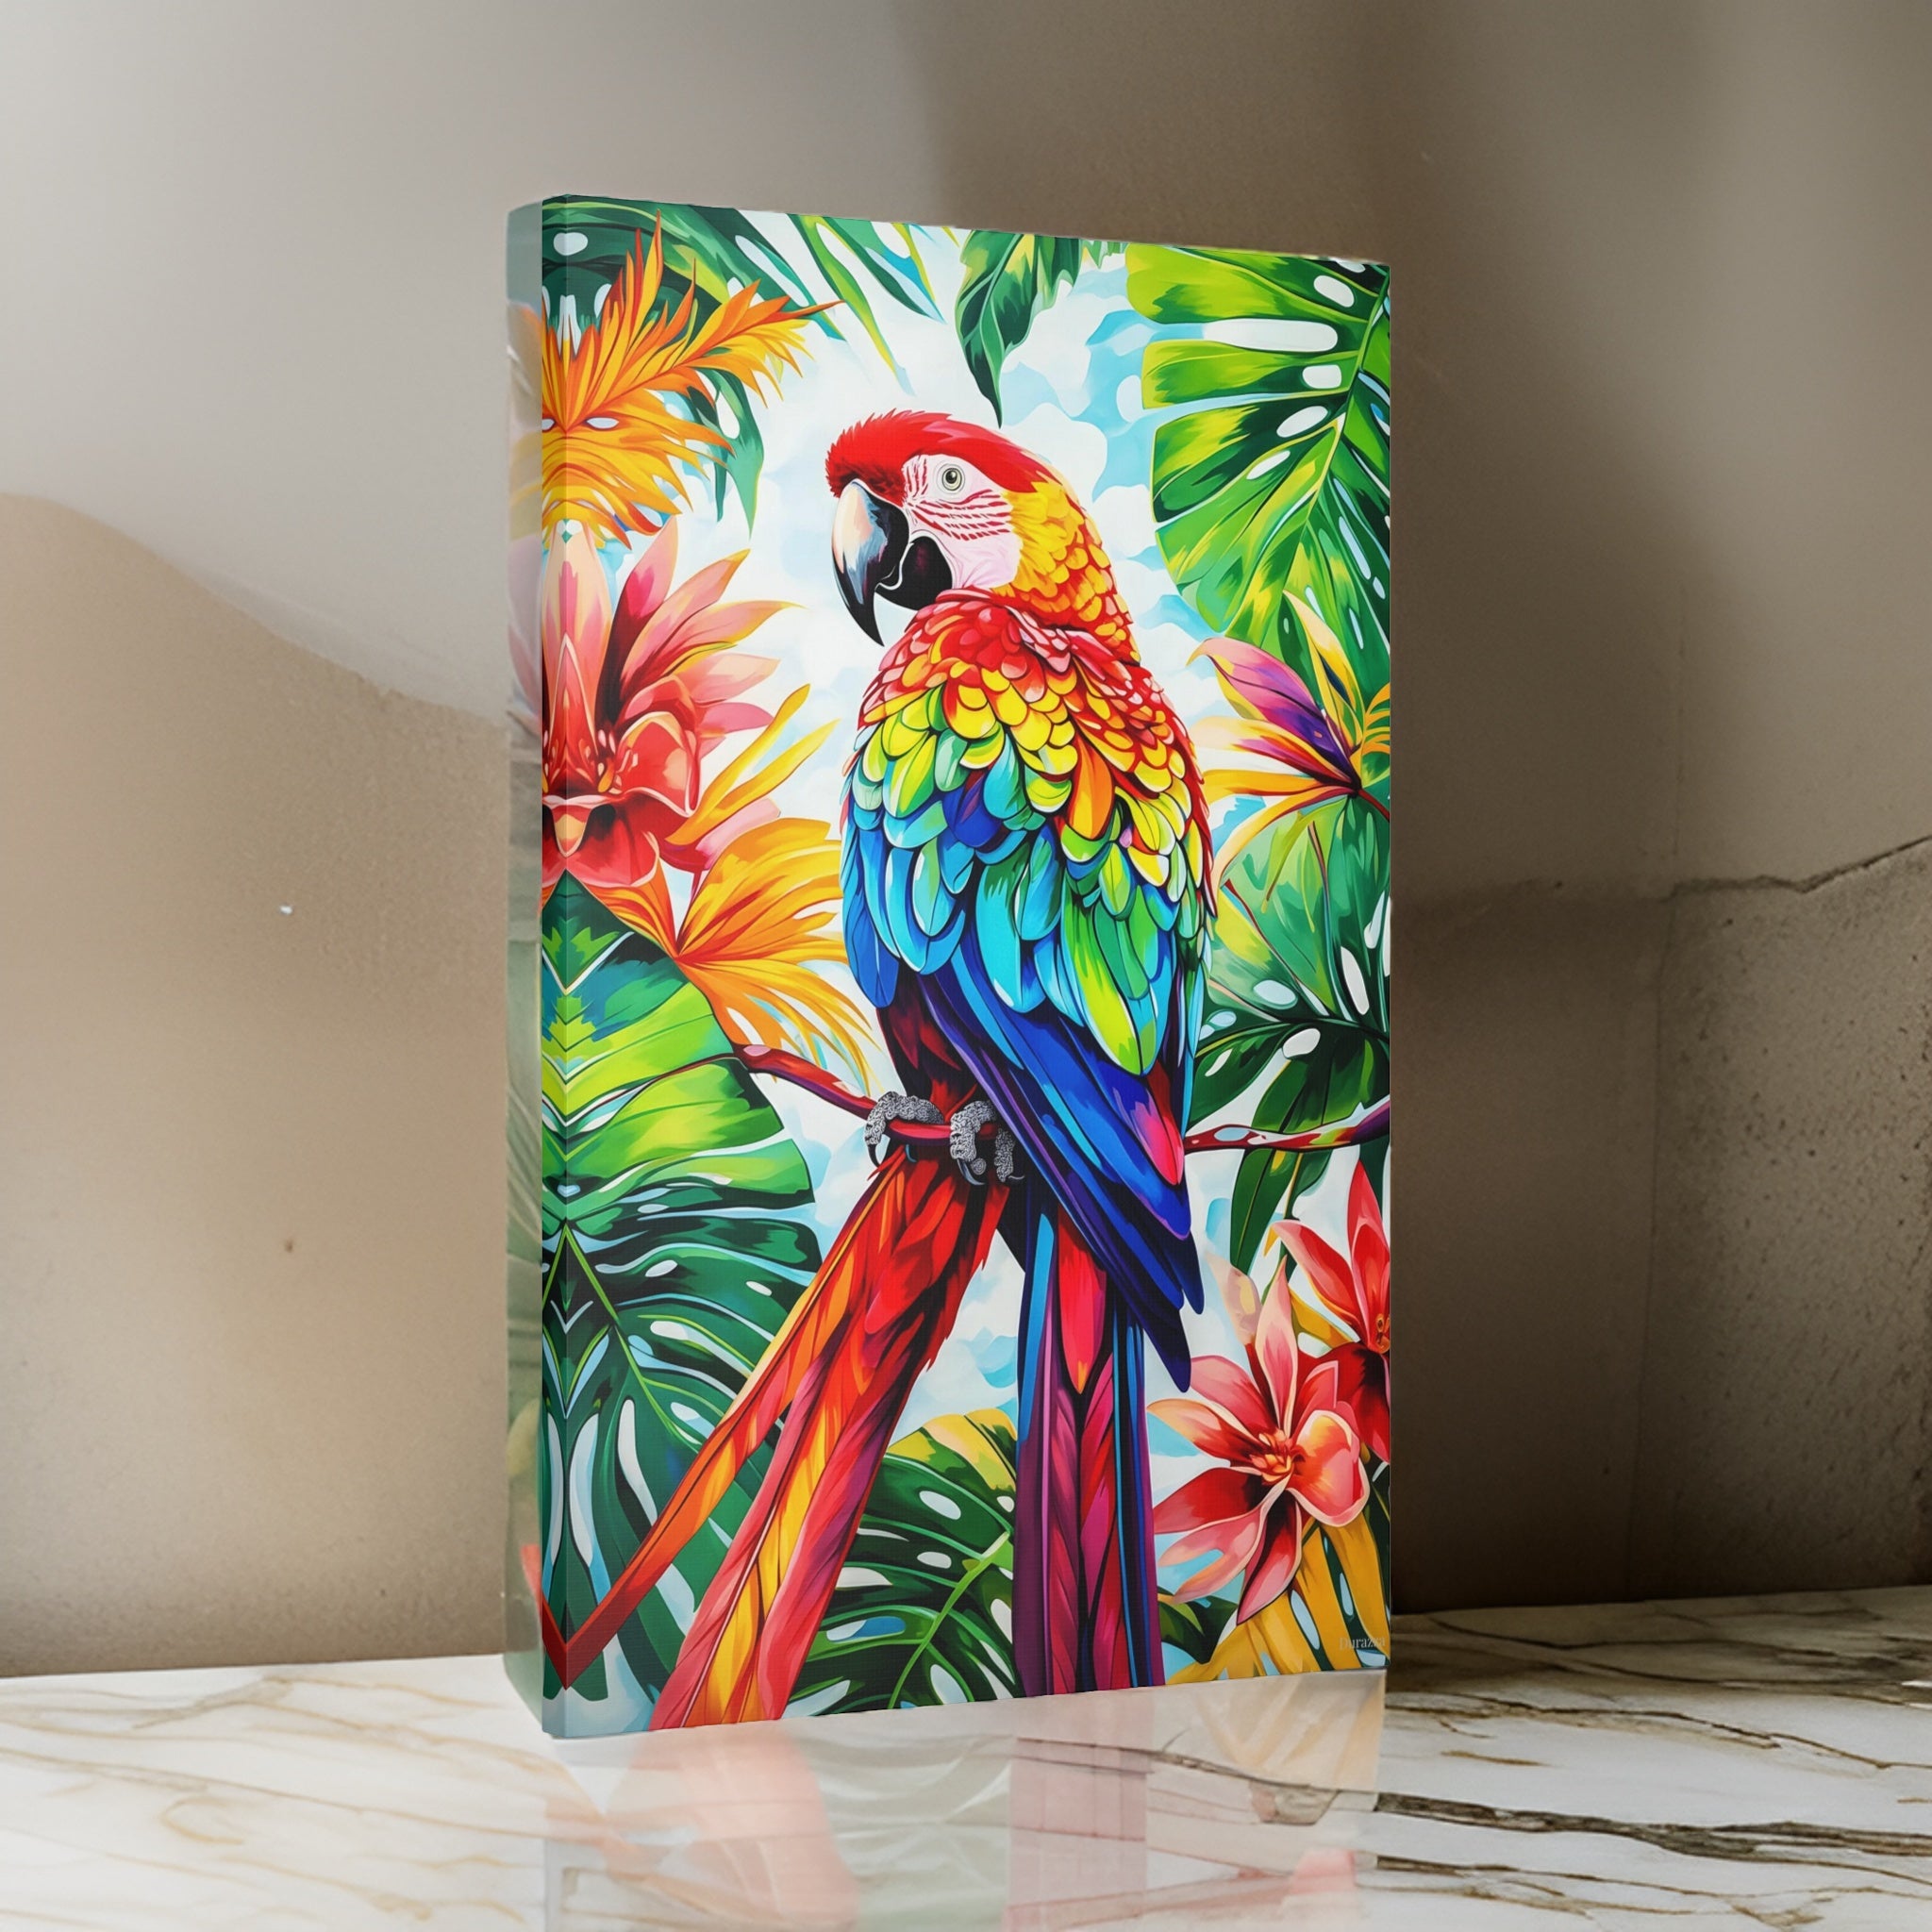 Majesty Macaw Parrot Framed Art Print: Tropical Bird Art